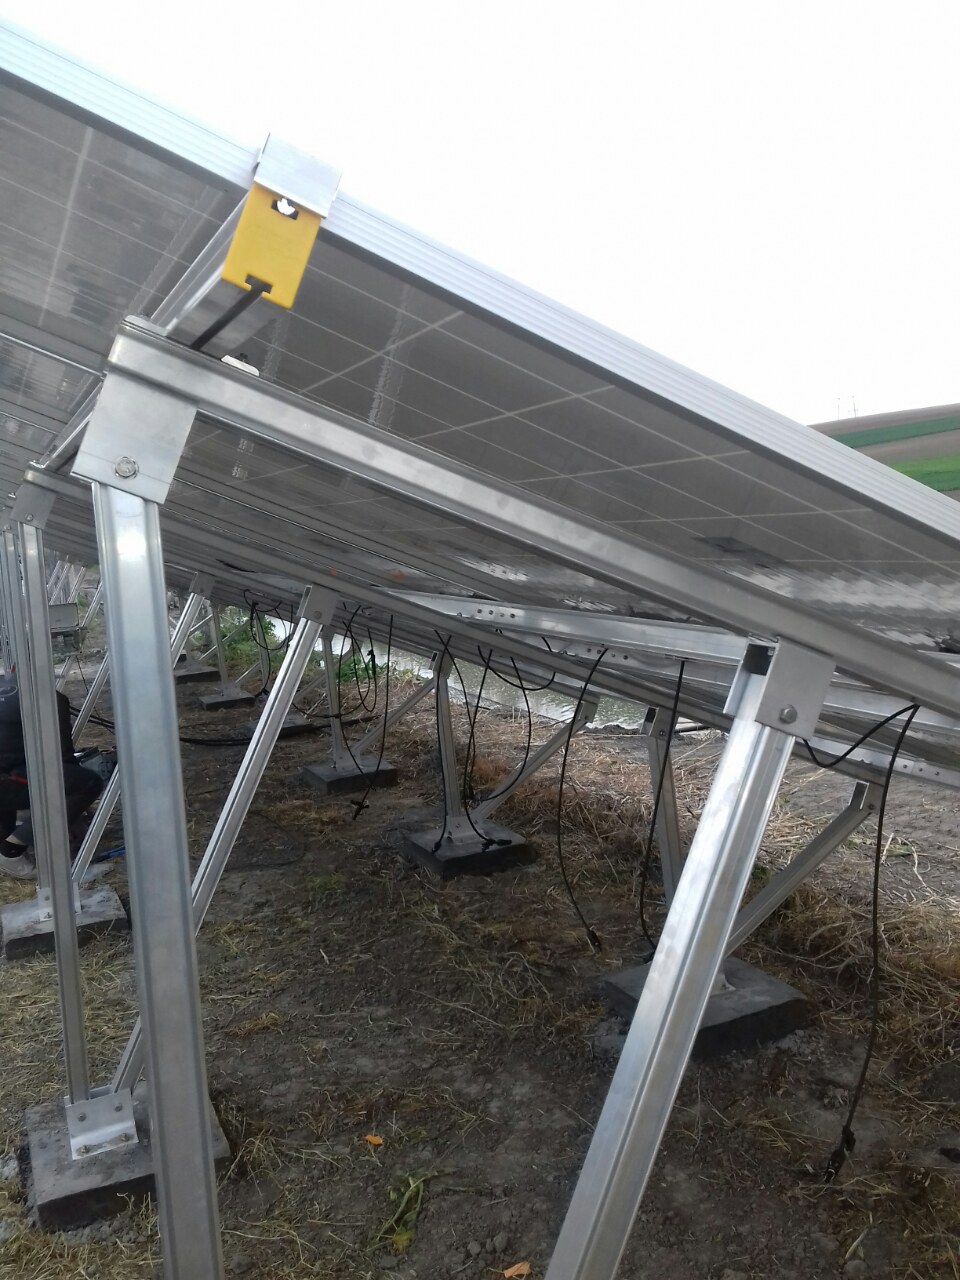 solarni paneli i solarne pumpe